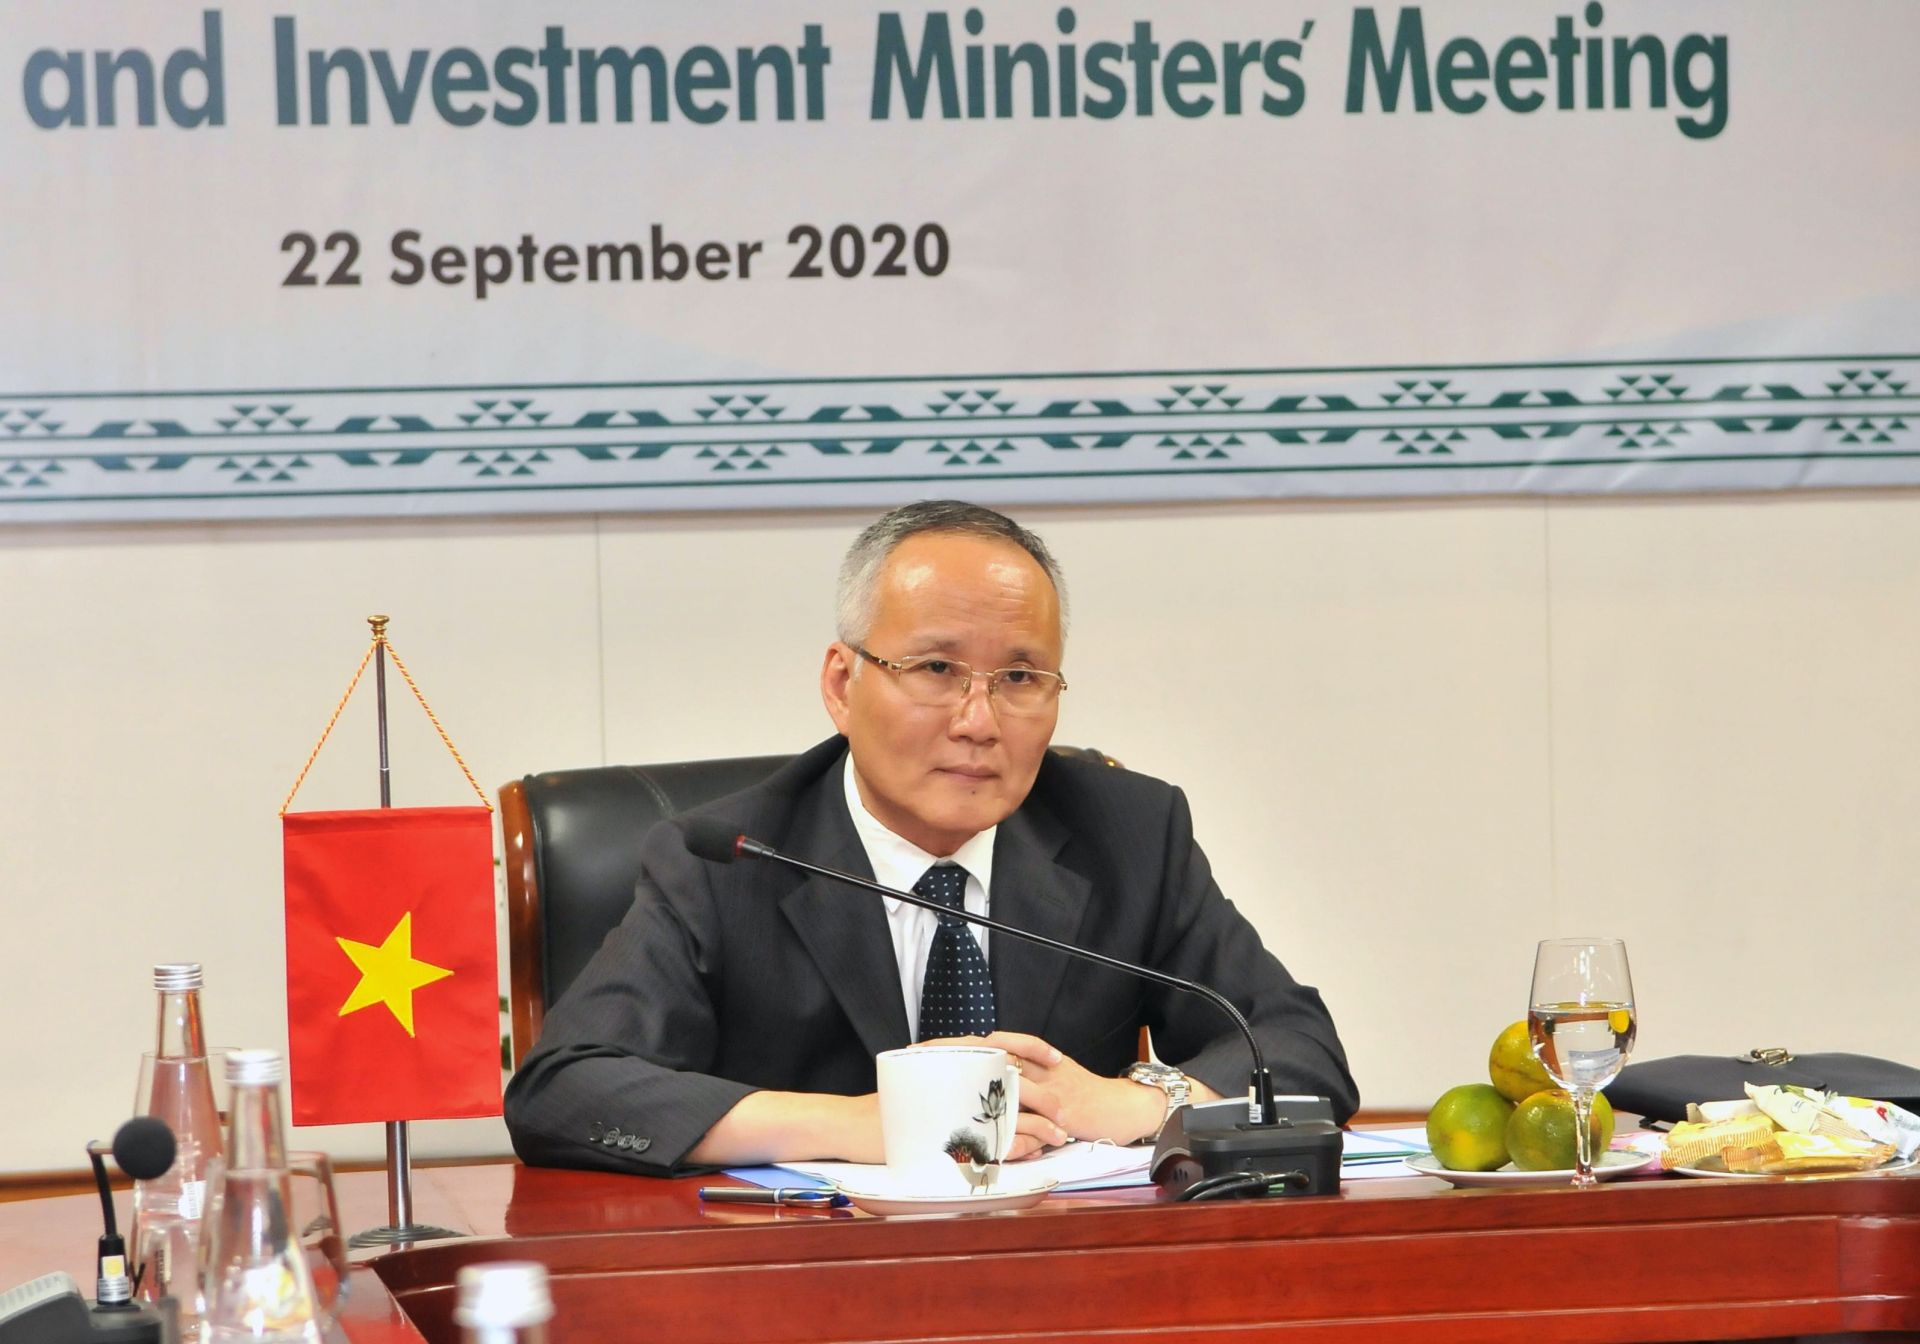 Thứ trưởng Bộ Công Thương Trần Quốc Khánh khẳng định Việt Nam sẵn sàng hợp tác với G20 để sớm ngăn chặn đại dịch và phục hồi kinh tế